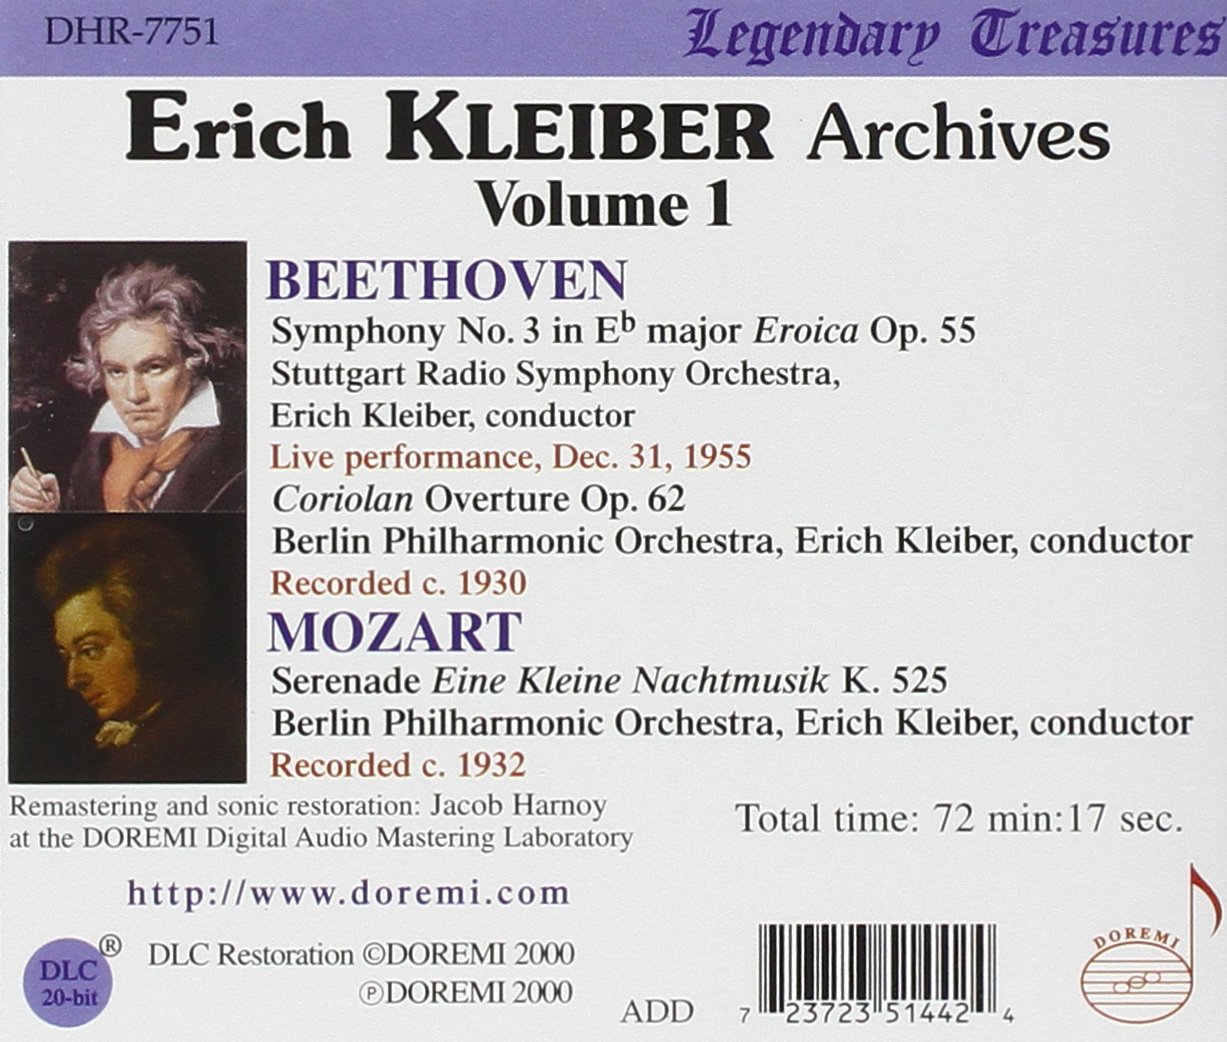 Erich Kleiber 베토벤: 교향곡 3번 / 모차르트: 세레나데 (Beethoven: Symphony No.3 'Eroica' / Mozart: Serenade No.13 'Eine Kleine Nachtmusik') 